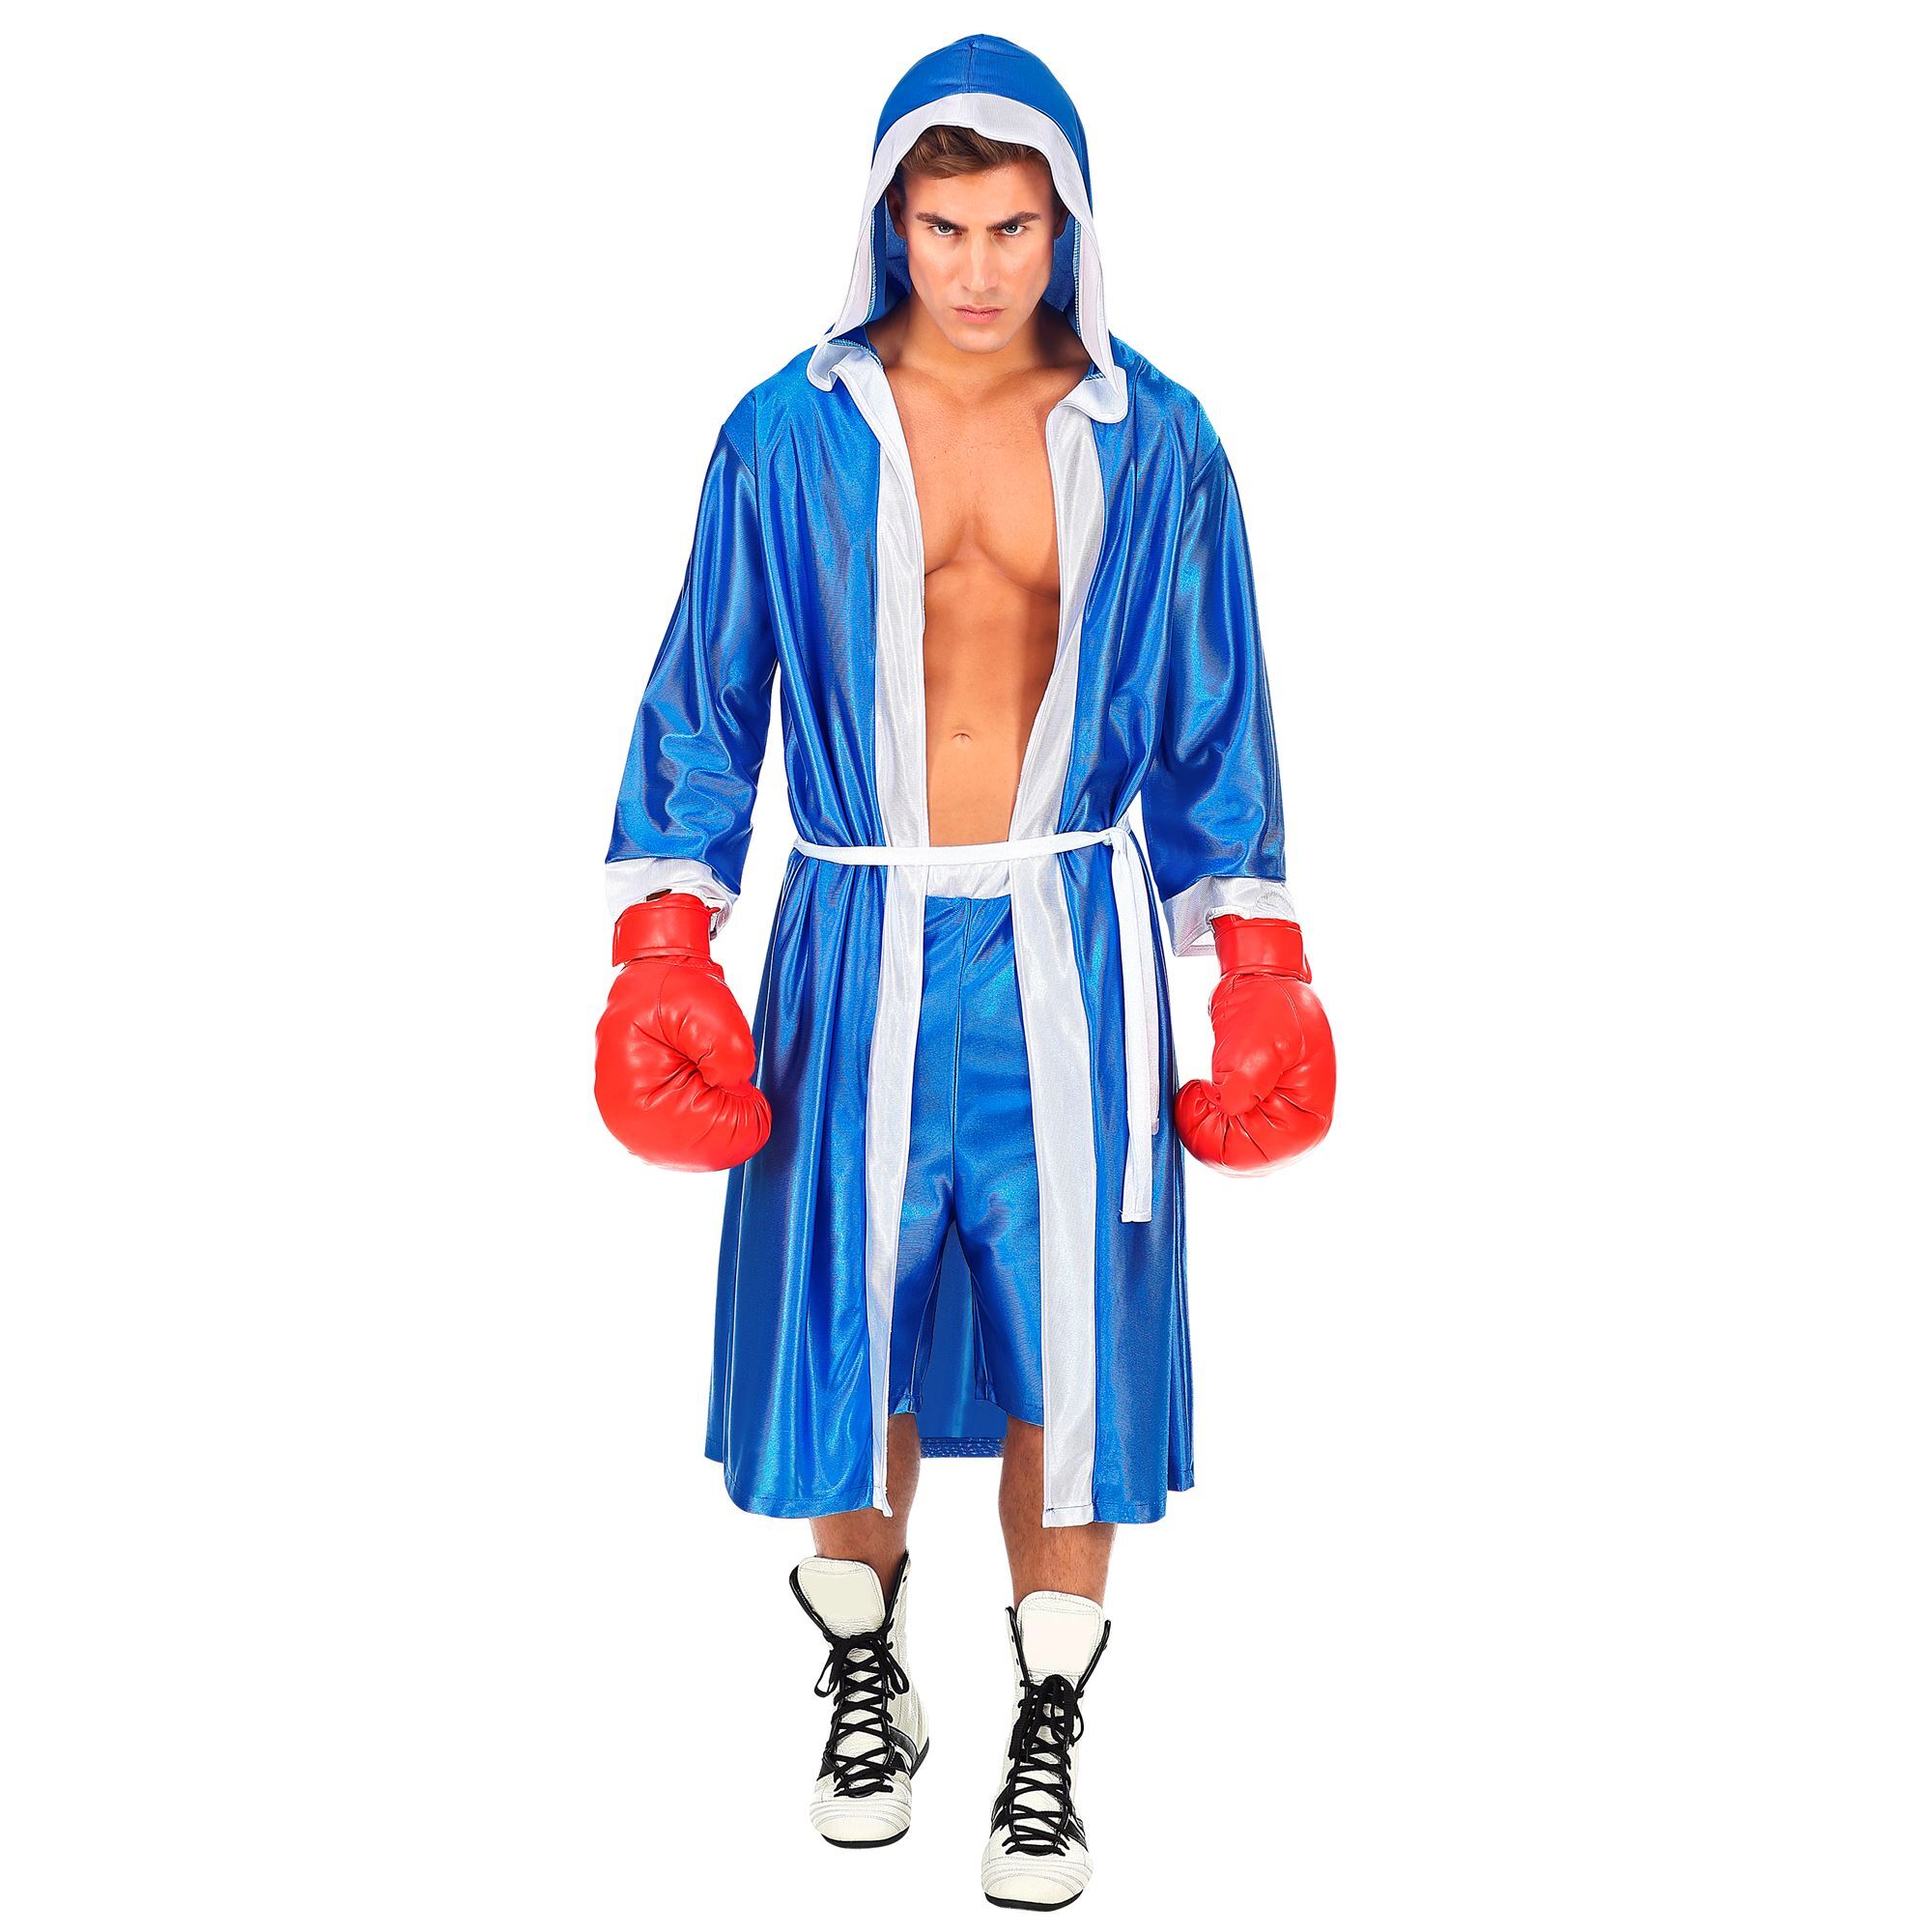 Bokser outfitje blauw Kostuum bokser